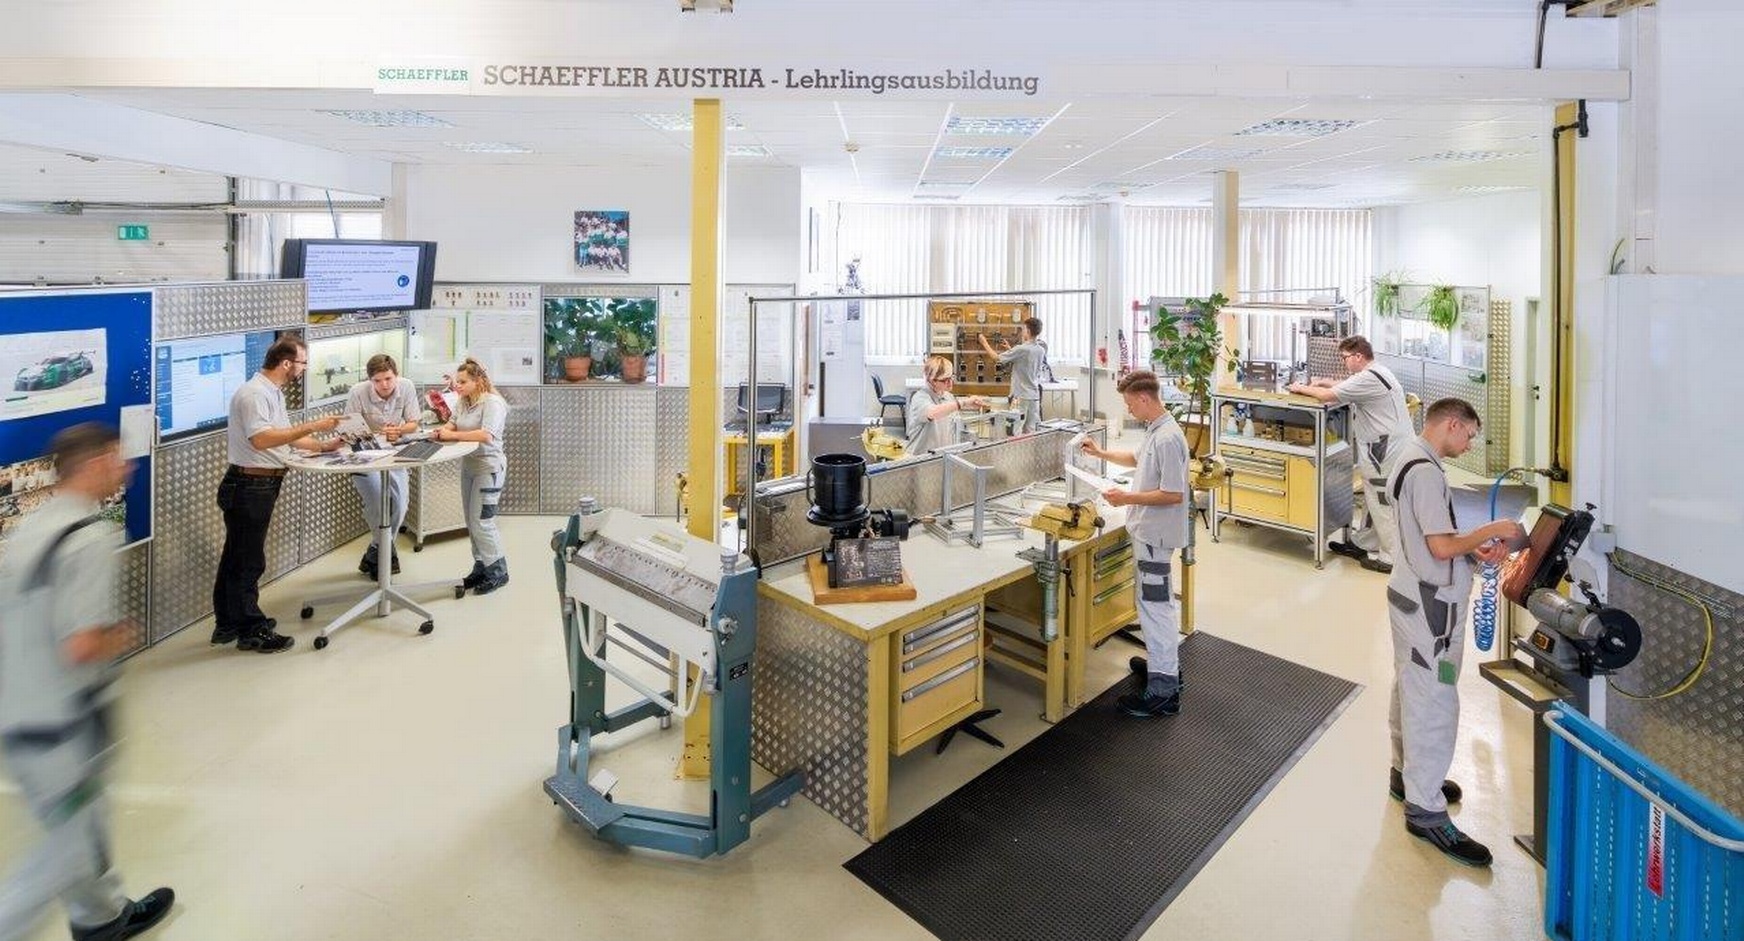 Schaeffler Austria GmbH